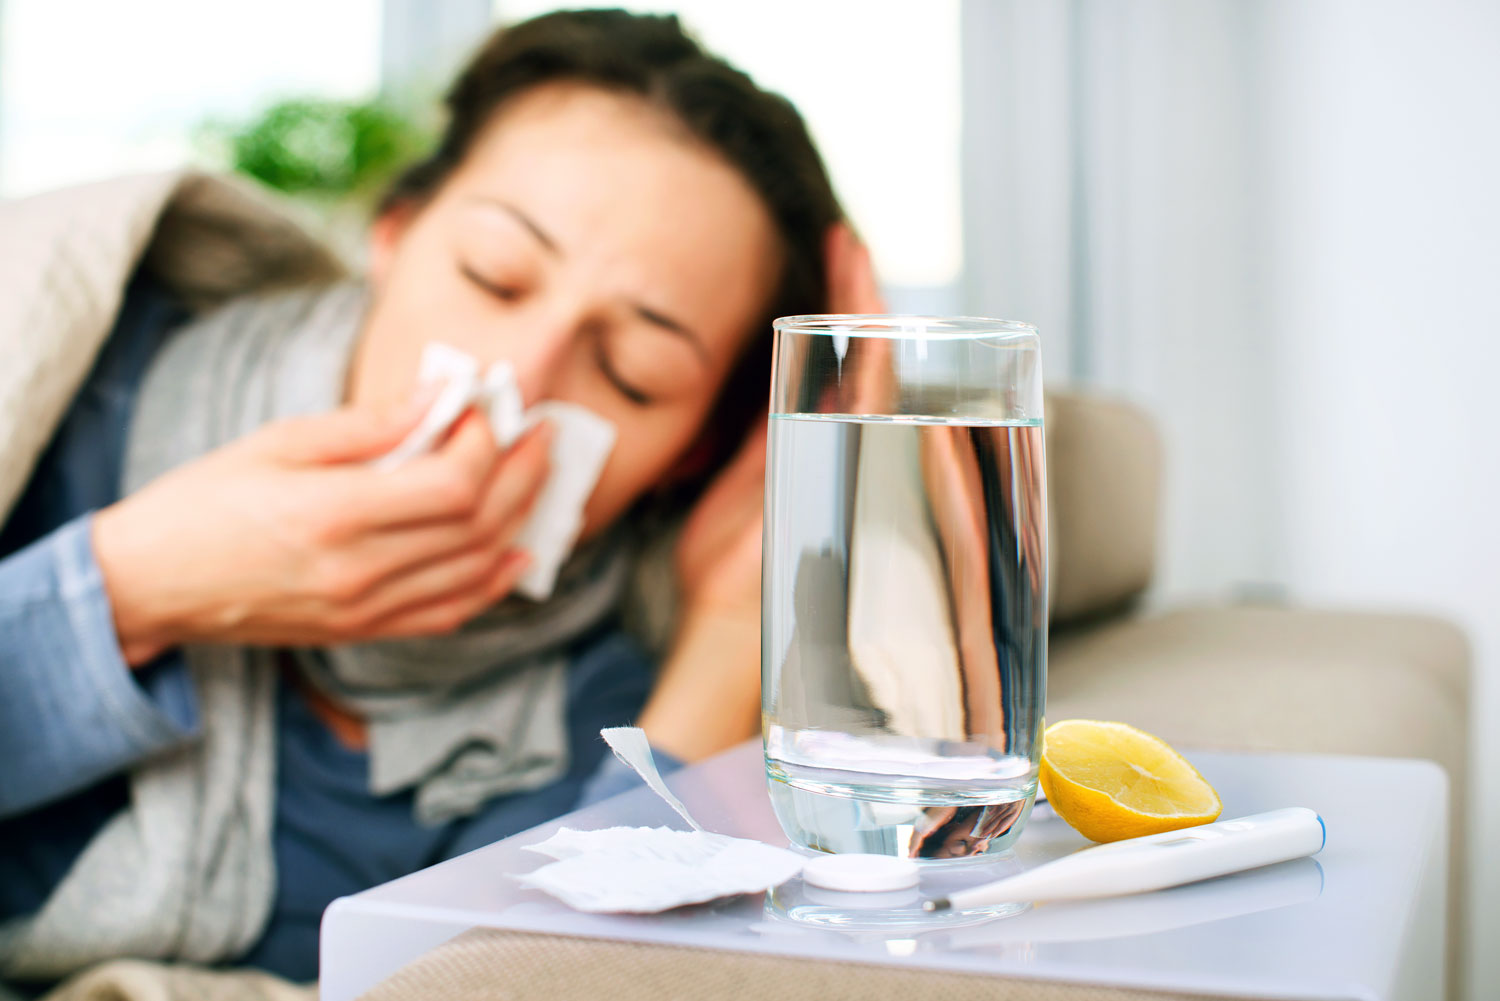 Megfázásos tünetek esetén növelni kell a folyadékbevitelt